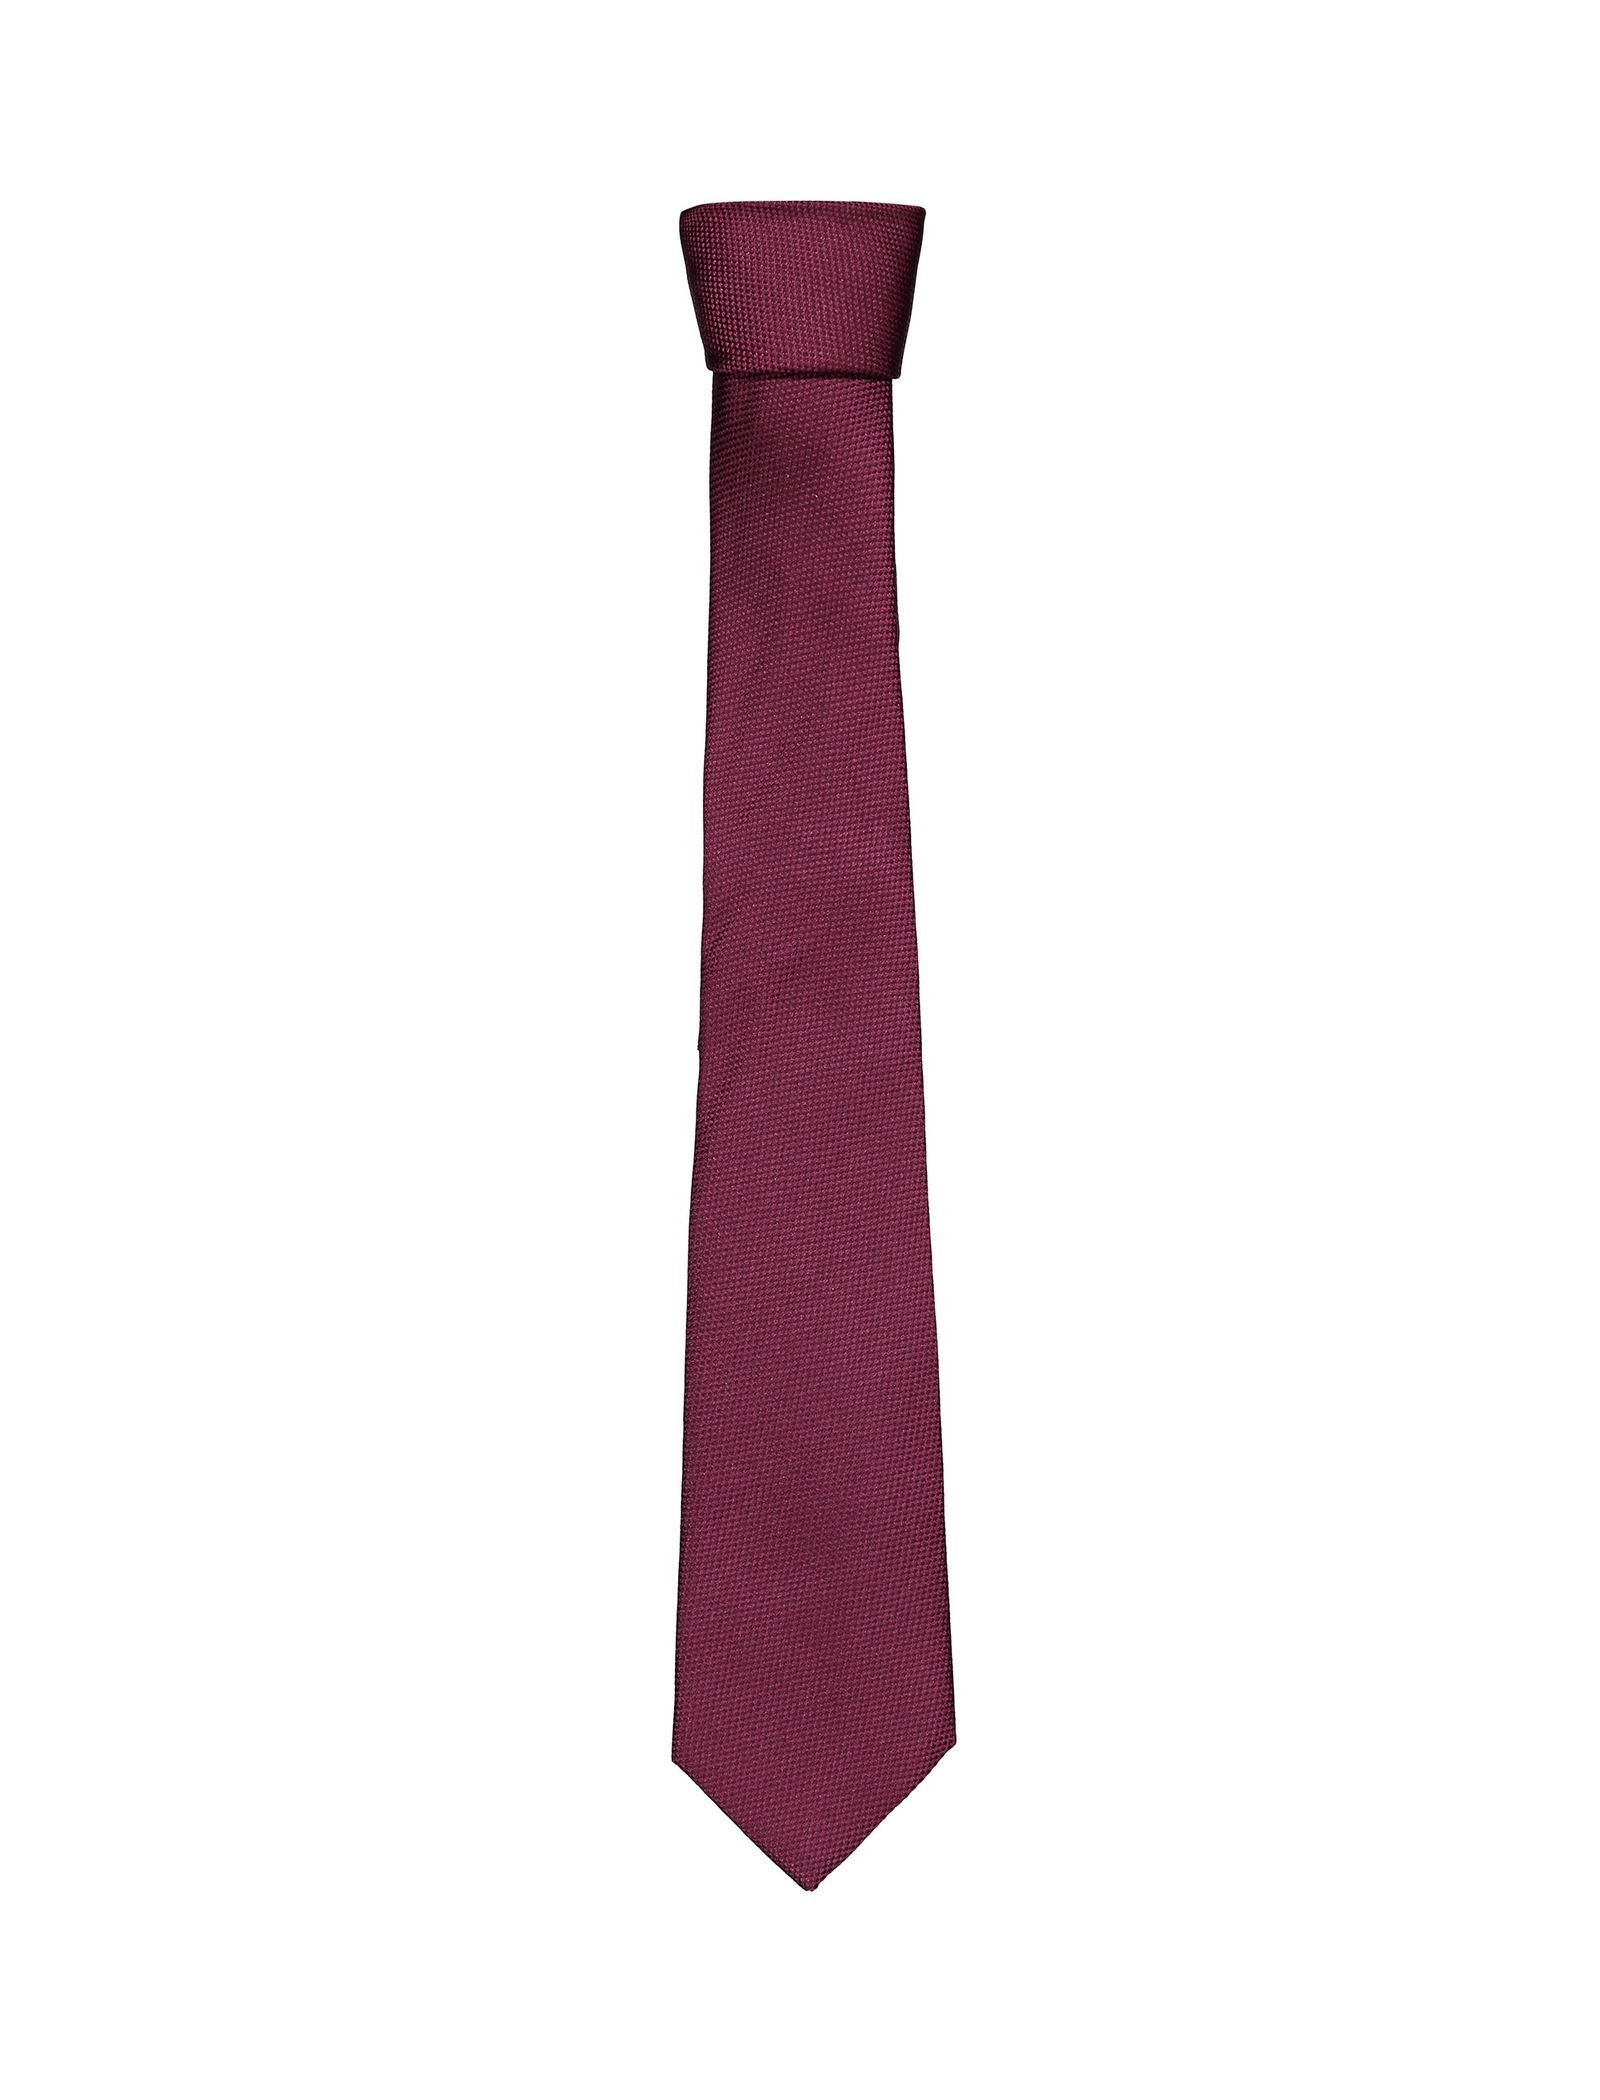 کراوات ابریشمی مردانه - مانگو - قرمز تيره - 2